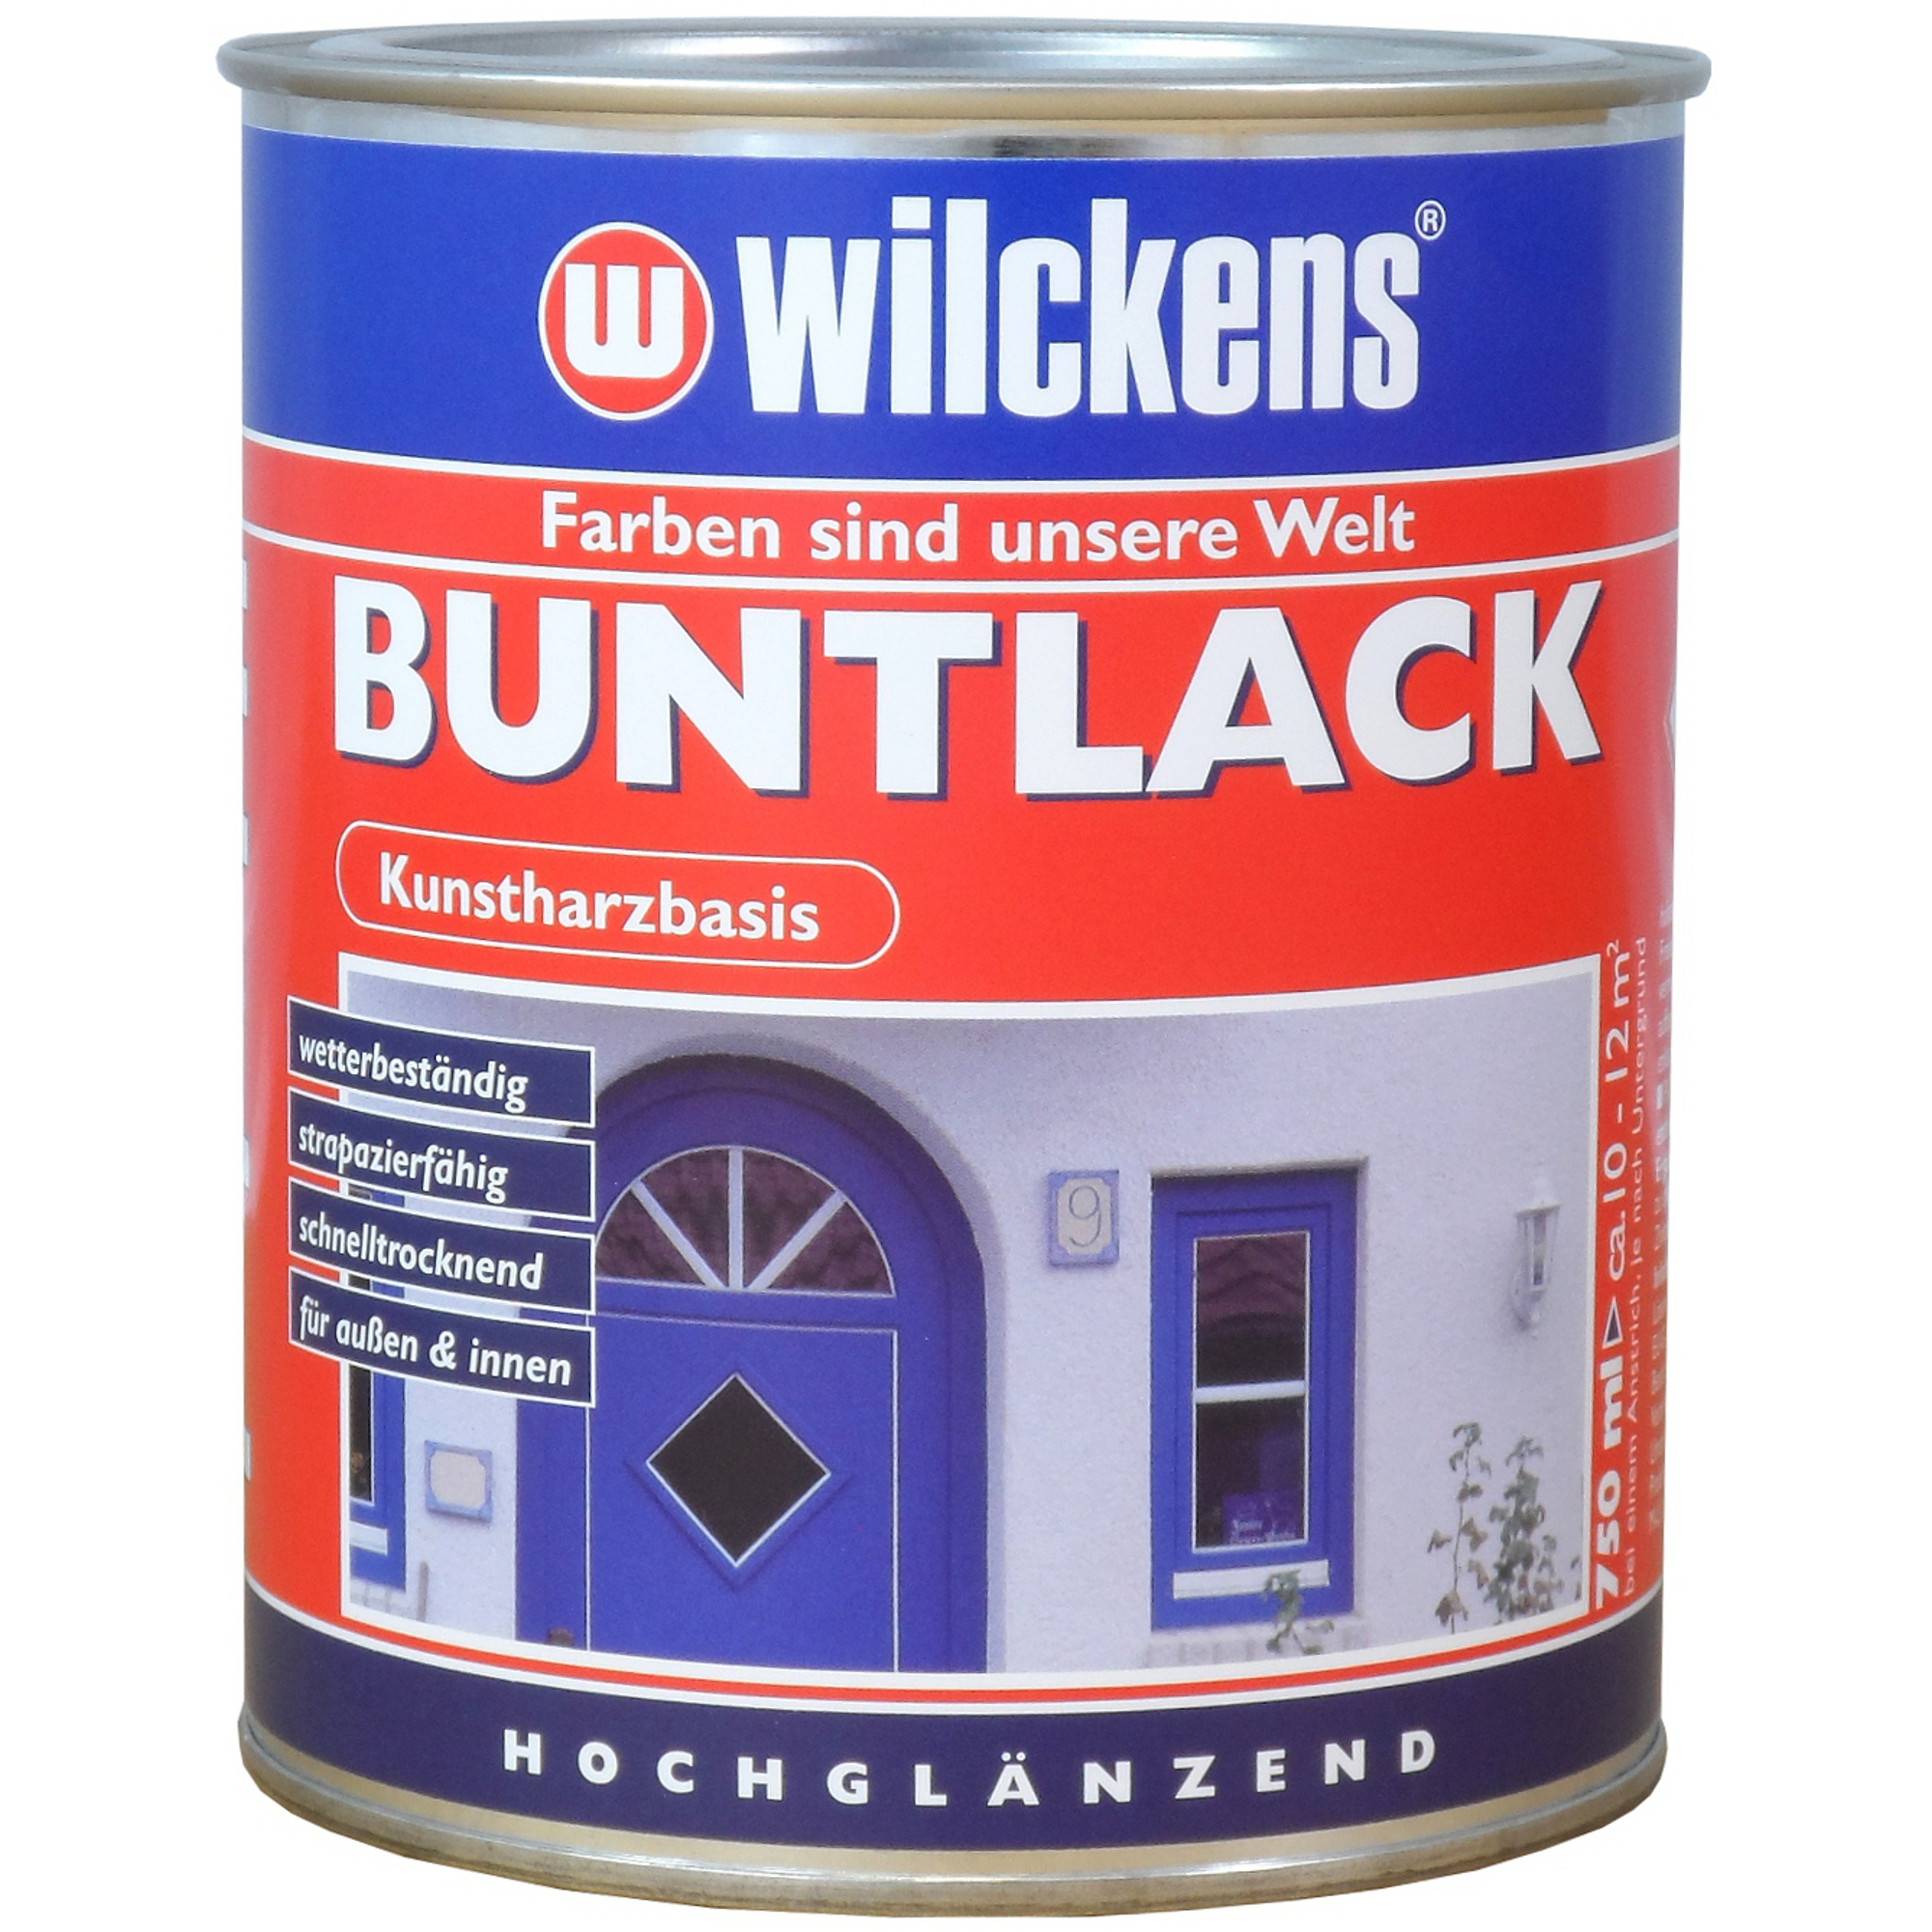 Buntlack 'RAL 9005' tiefschwarz hochglänzend 750 ml + product picture